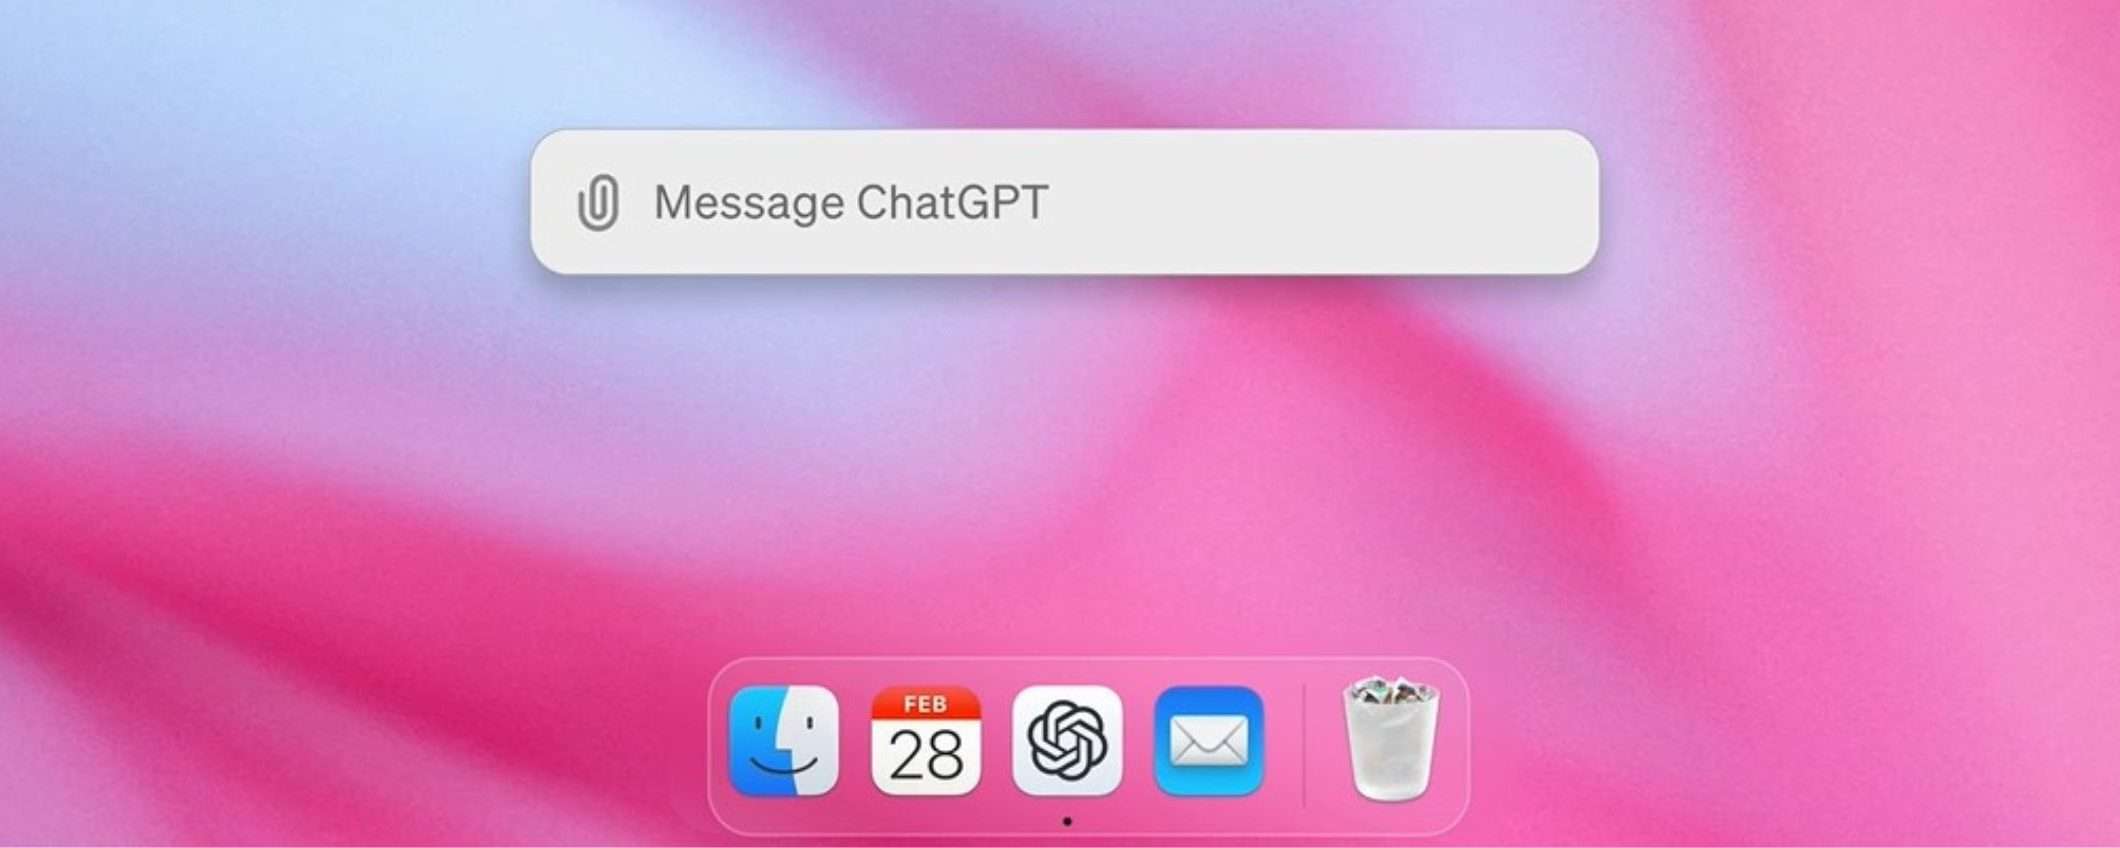 ChatGPT per Mac è finalmente disponibile: come accedere